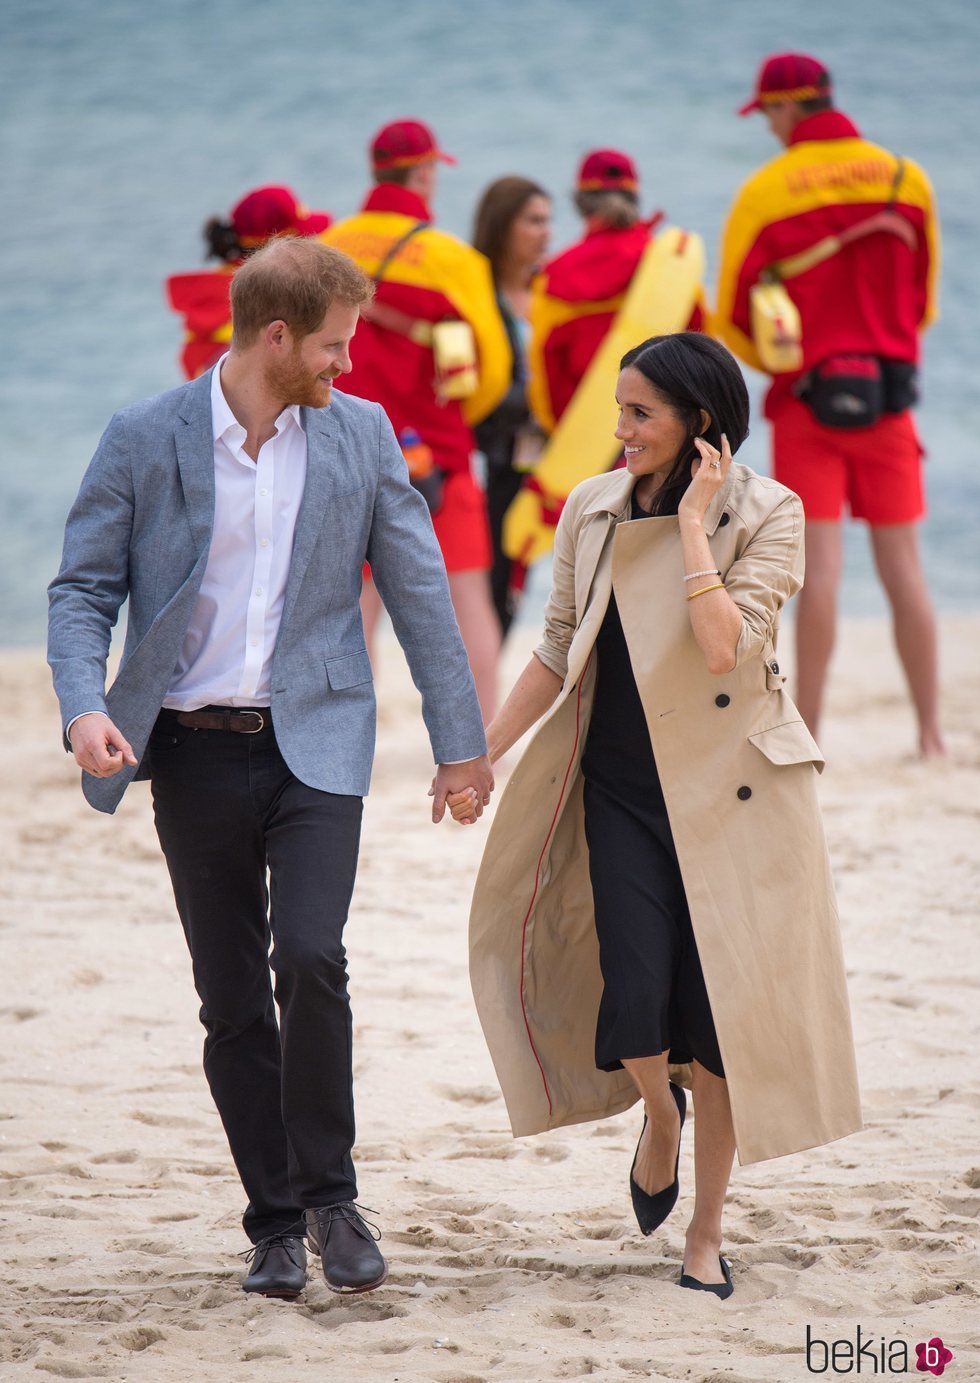 El Príncipe Harry y Meghan Markle pasean enamorados por las playas de Melbourne